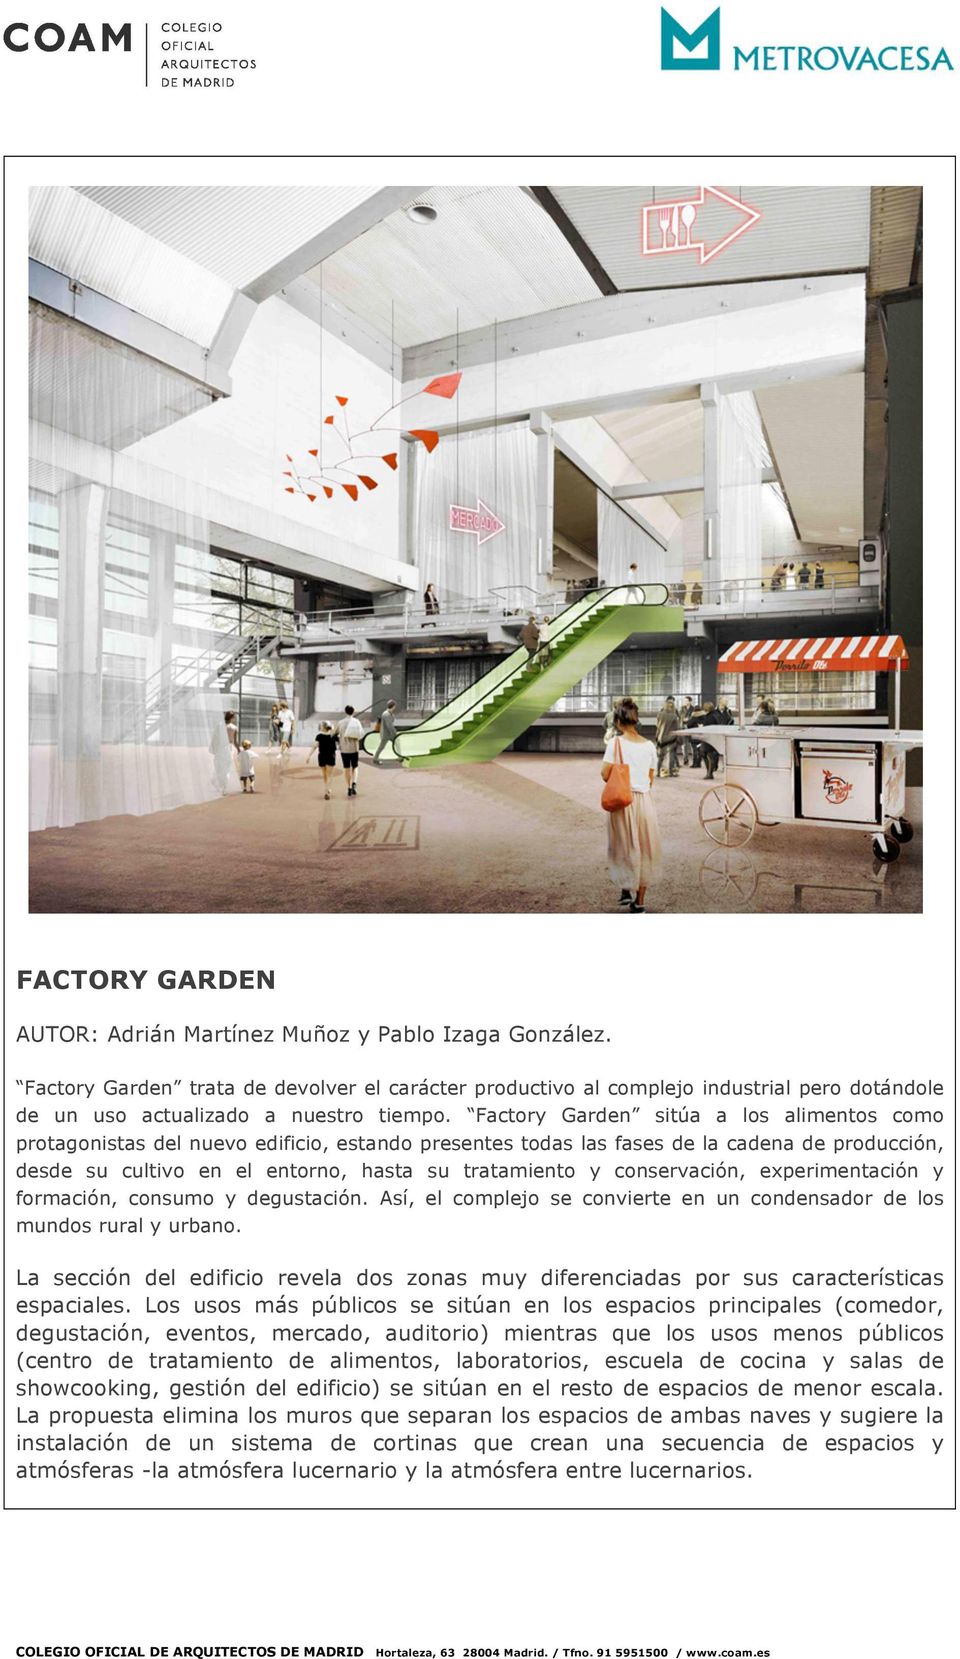 Factory Garden sitúa a los alimentos como protagonistas del nuevo edificio, estando presentes todas las fases de la cadena de producción, desde su cultivo en el entorno, hasta su tratamiento y